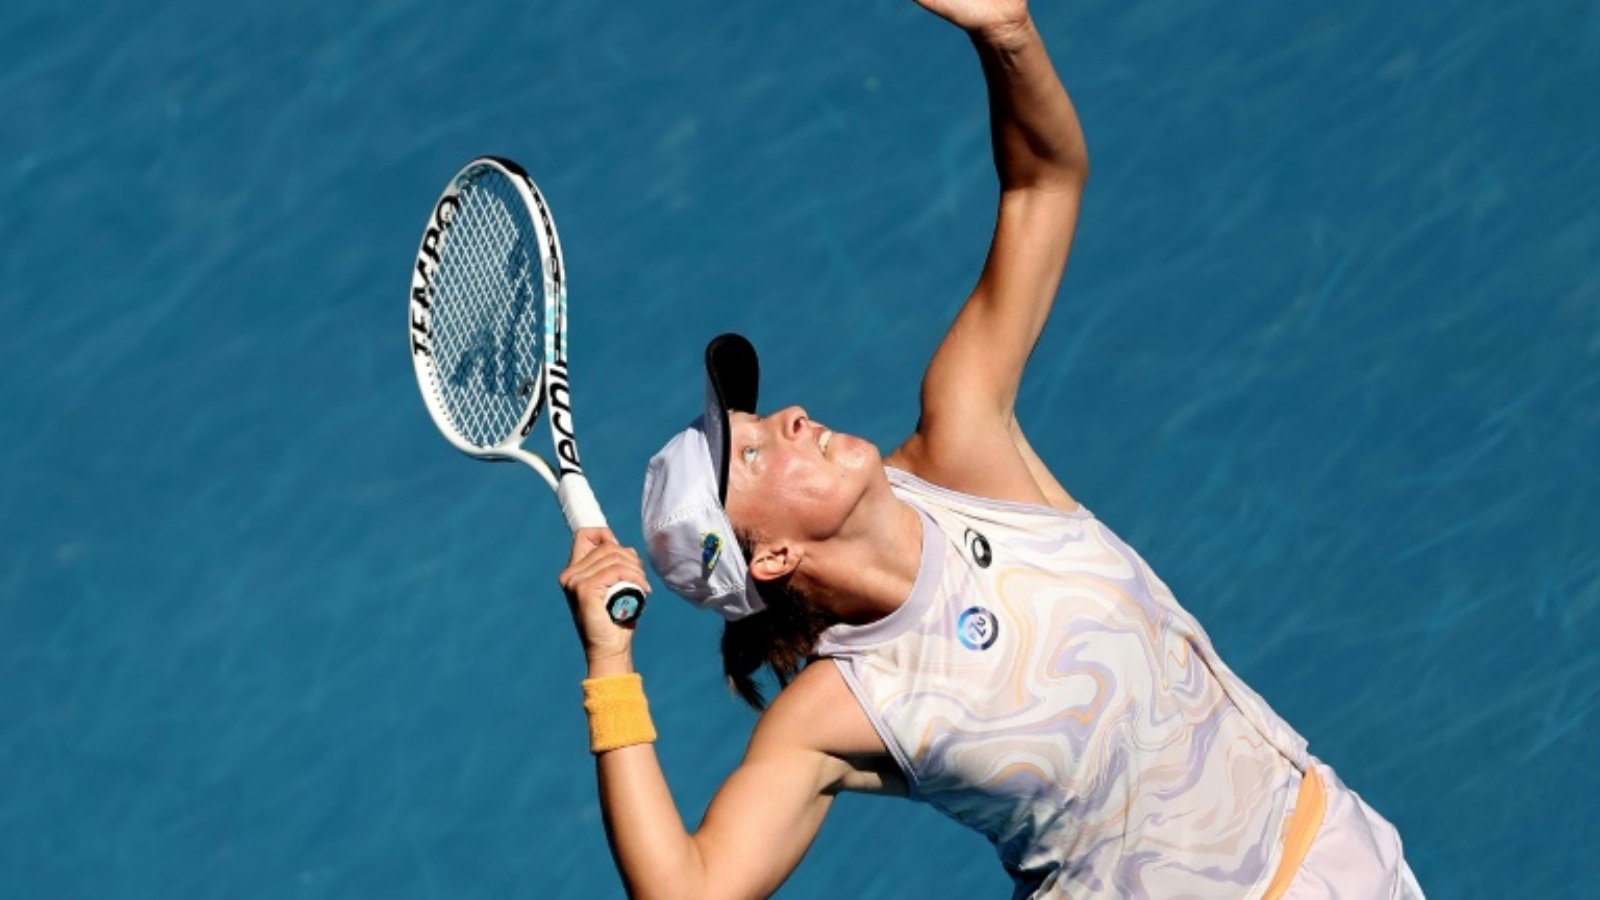 سحقت البولندية إيغا شفيونتيك، المصنفة أولى عالمياً، منافستها الإسبانية كريستينا بوكسا الصاعدة من التصفيات في الدور الثالث من بطولة أستراليا المفتوحة في 20 يناير 2023